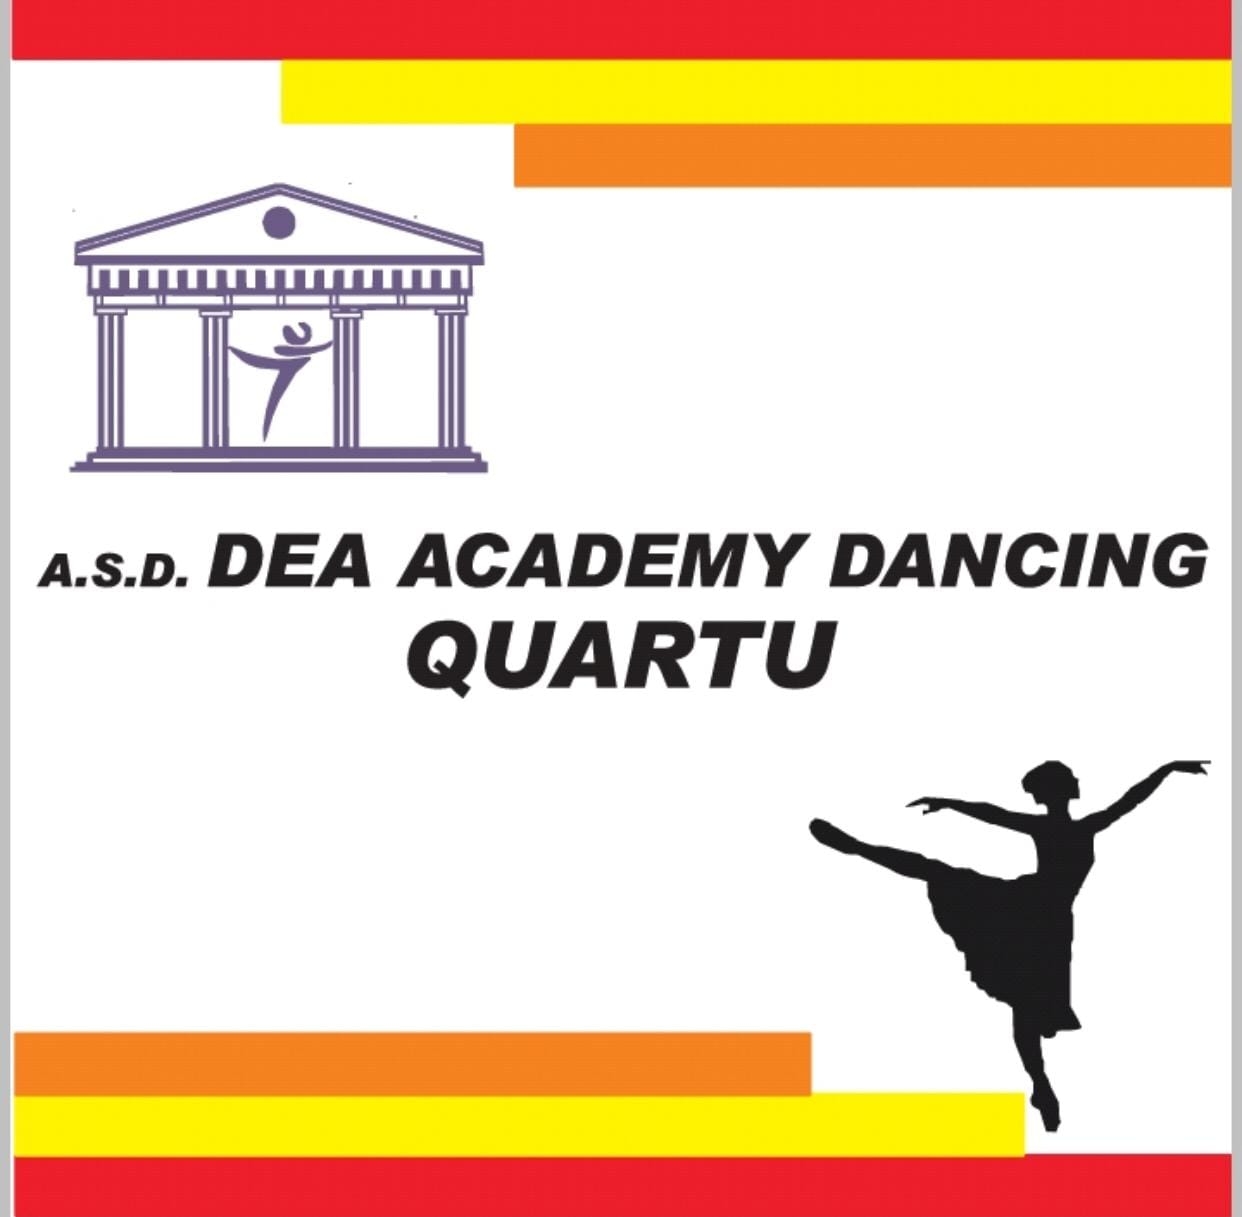 Dea Axcademy dancing